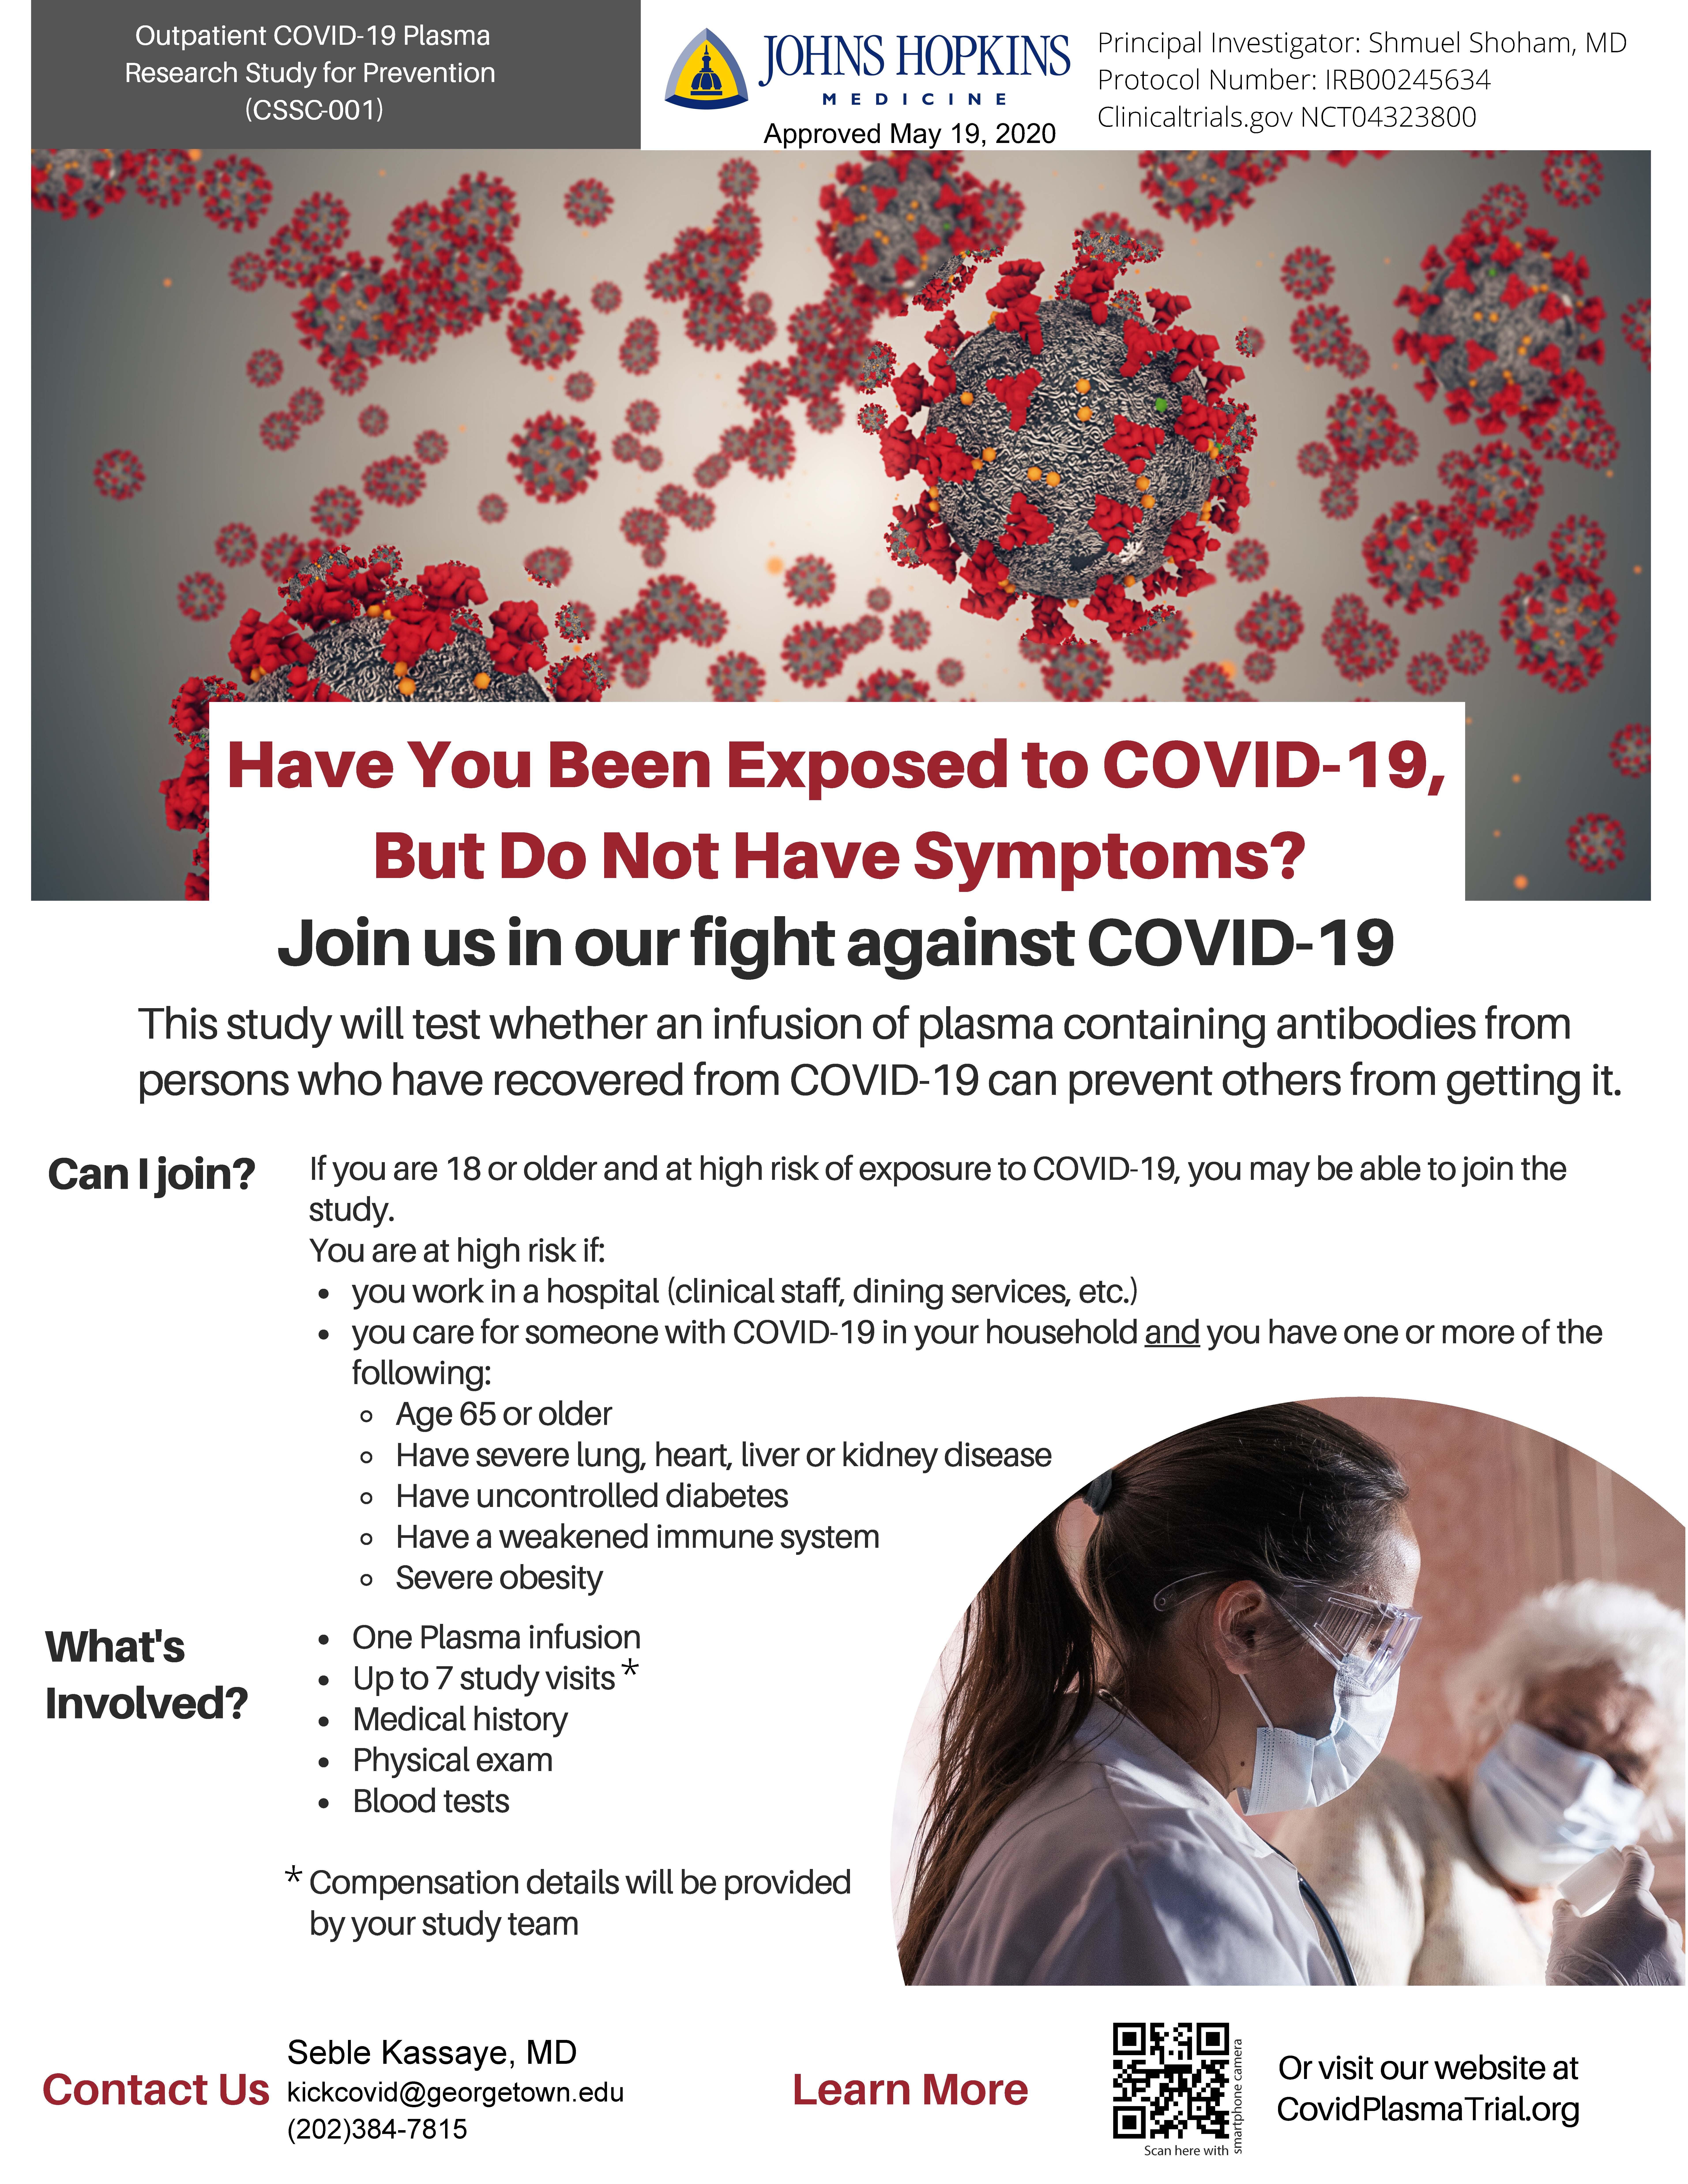 Promotional flyer for Dr. Kassaye's COVID-19 plasma trial. Visit covidplasmatrial.org for more details.